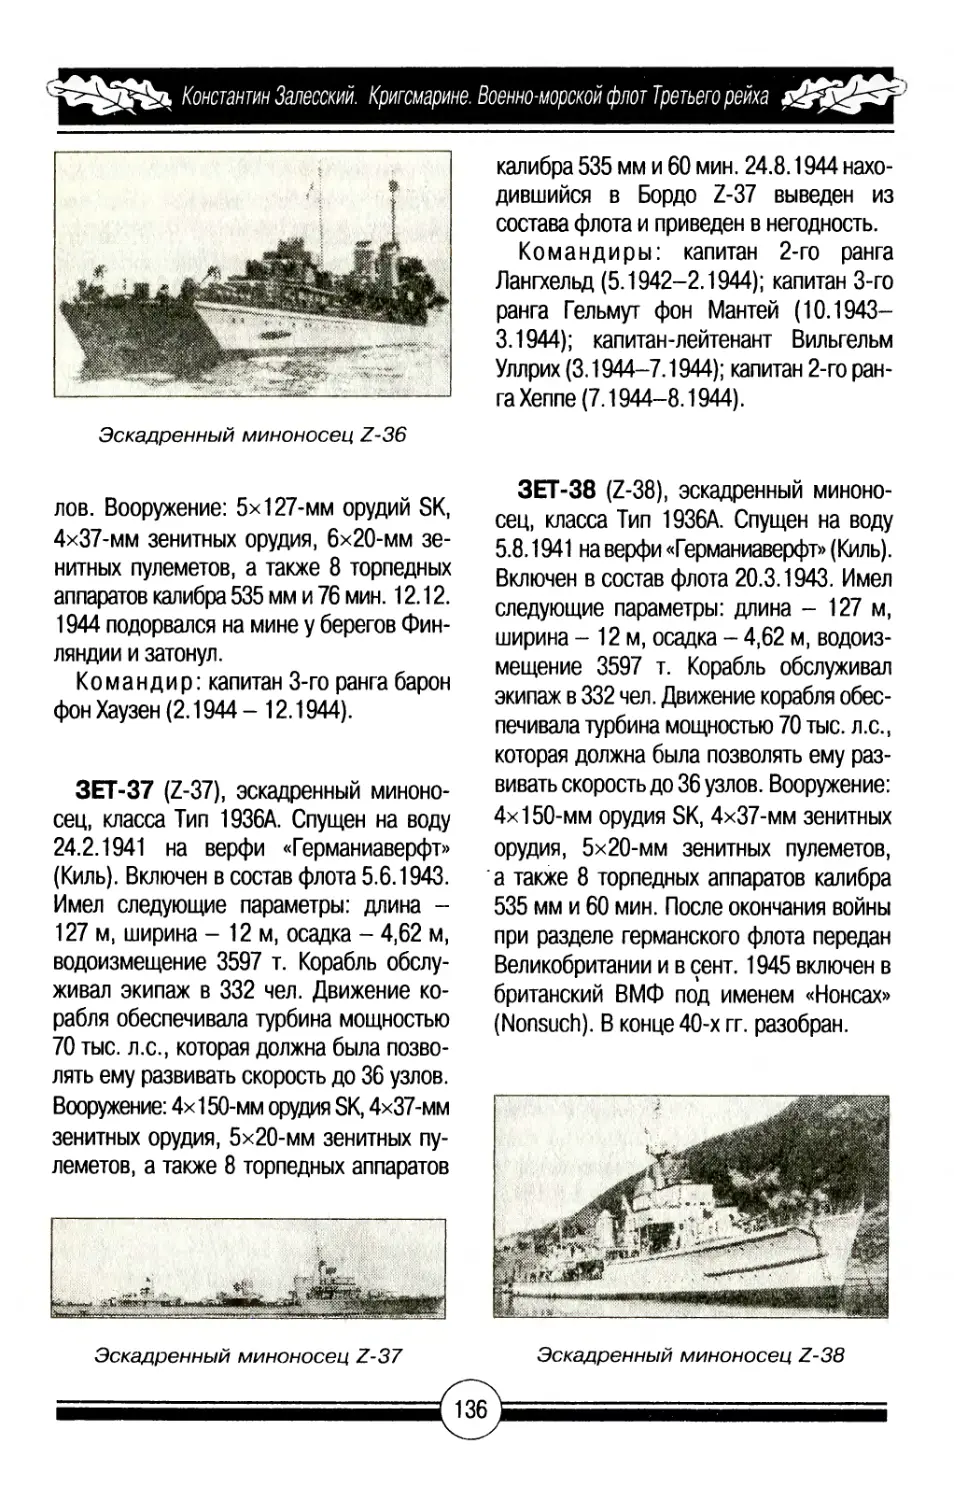 ЗЕТ-37
ЗЕТ-38